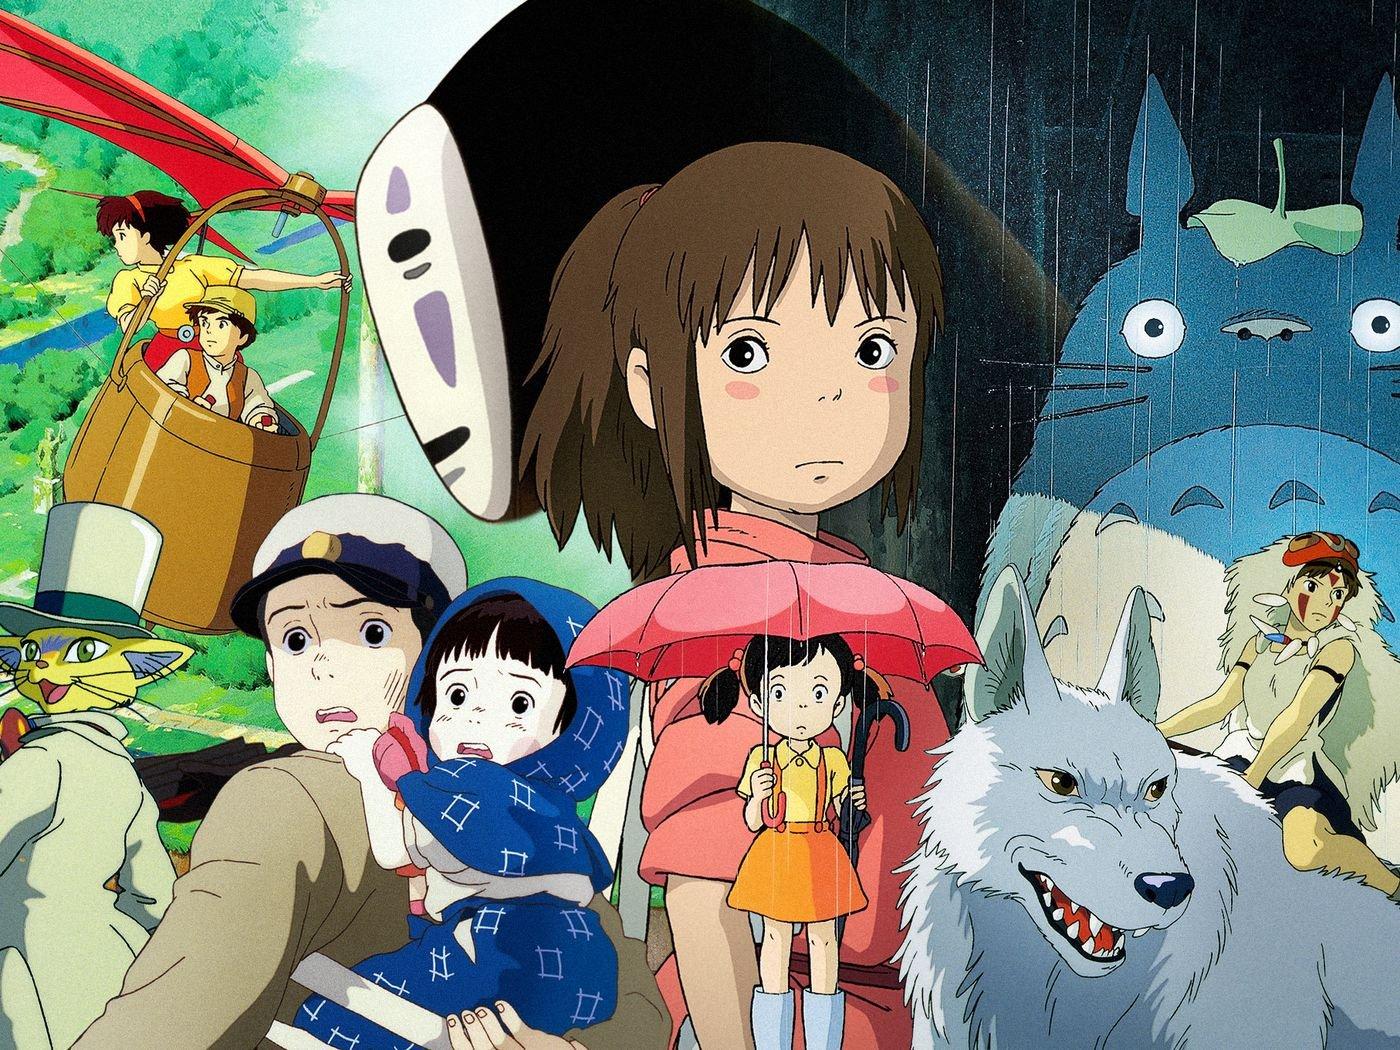 Top 10 bộ phim anime hay của Nhật Bản nhất định phải xem | ZaloPay